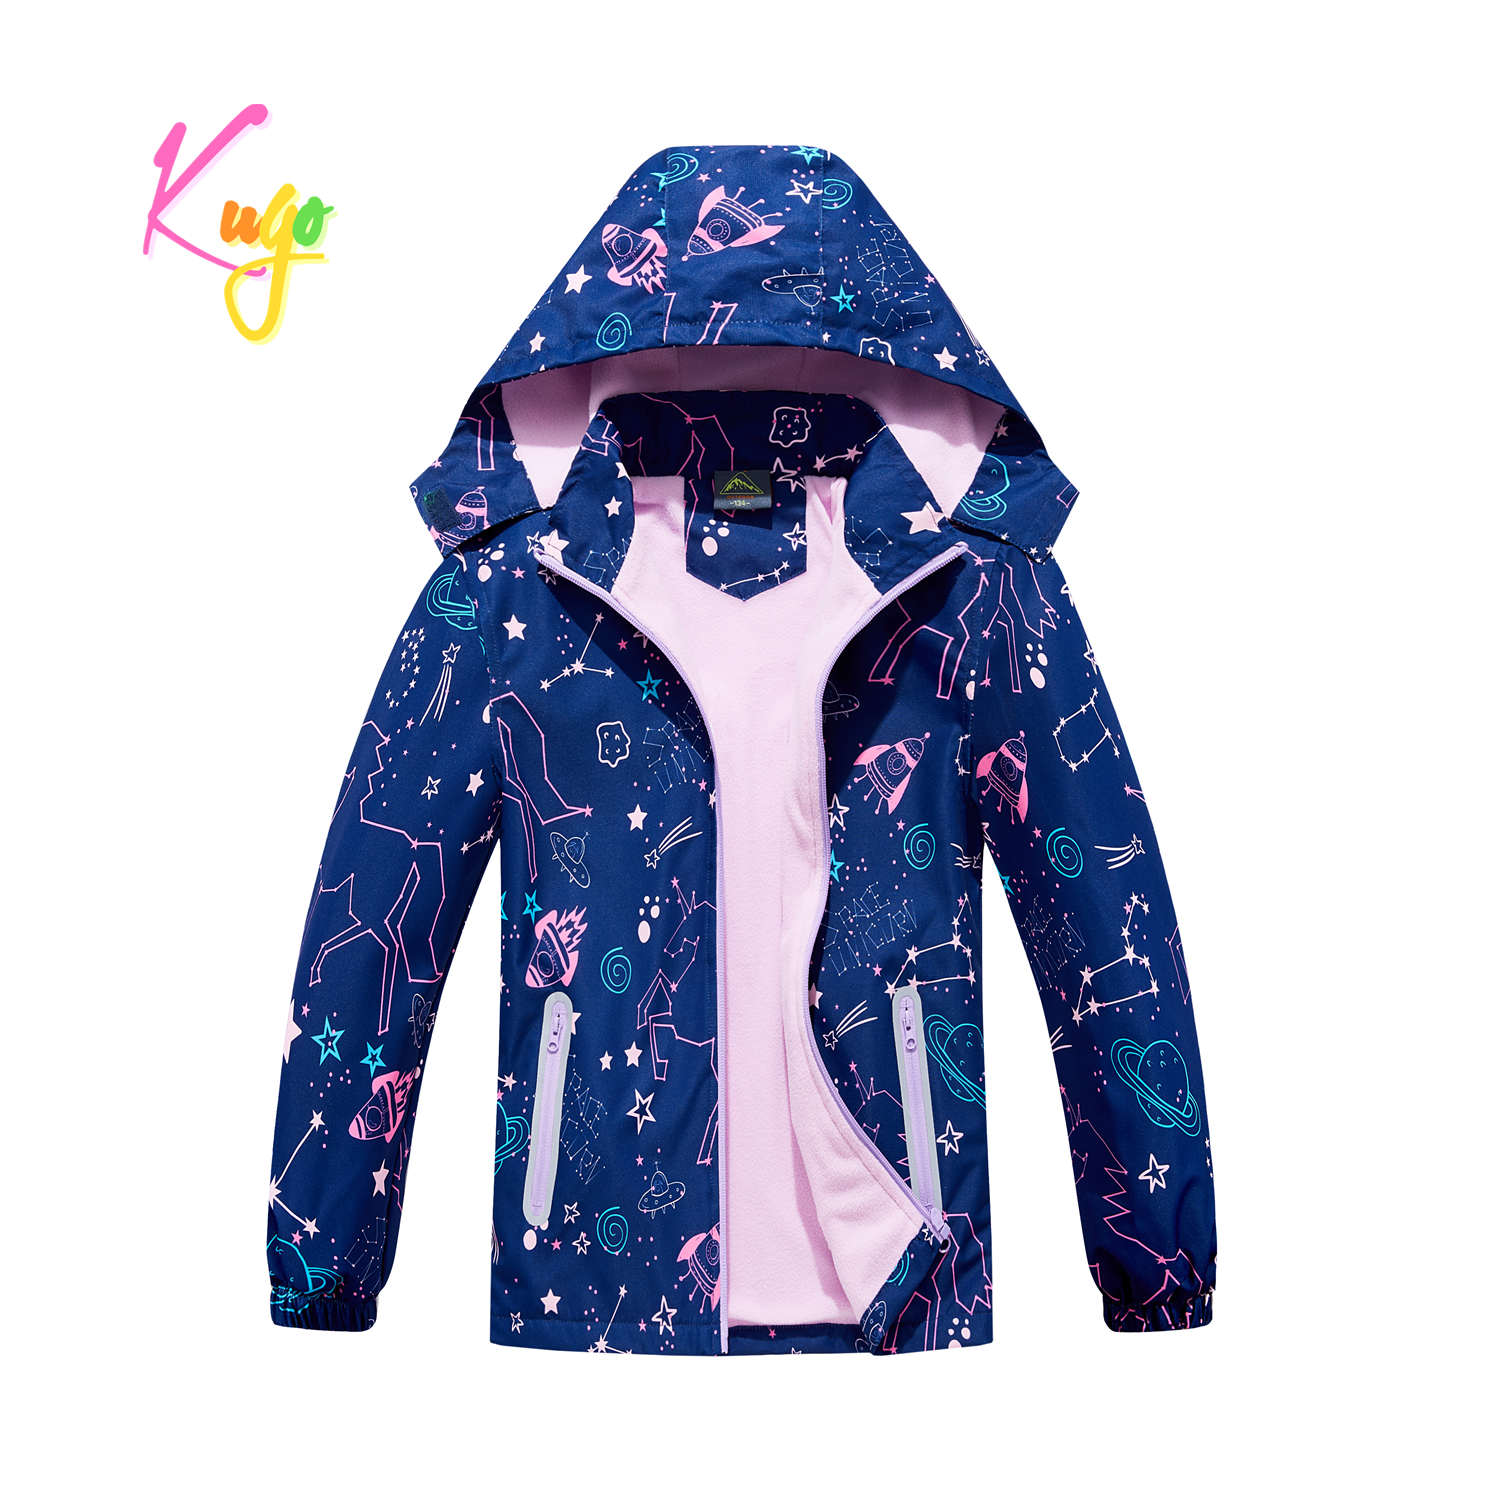 Dívčí podzimní bunda, zateplená - KUGO B2862, tmavě modrá Barva: Modrá tmavě, Velikost: 164